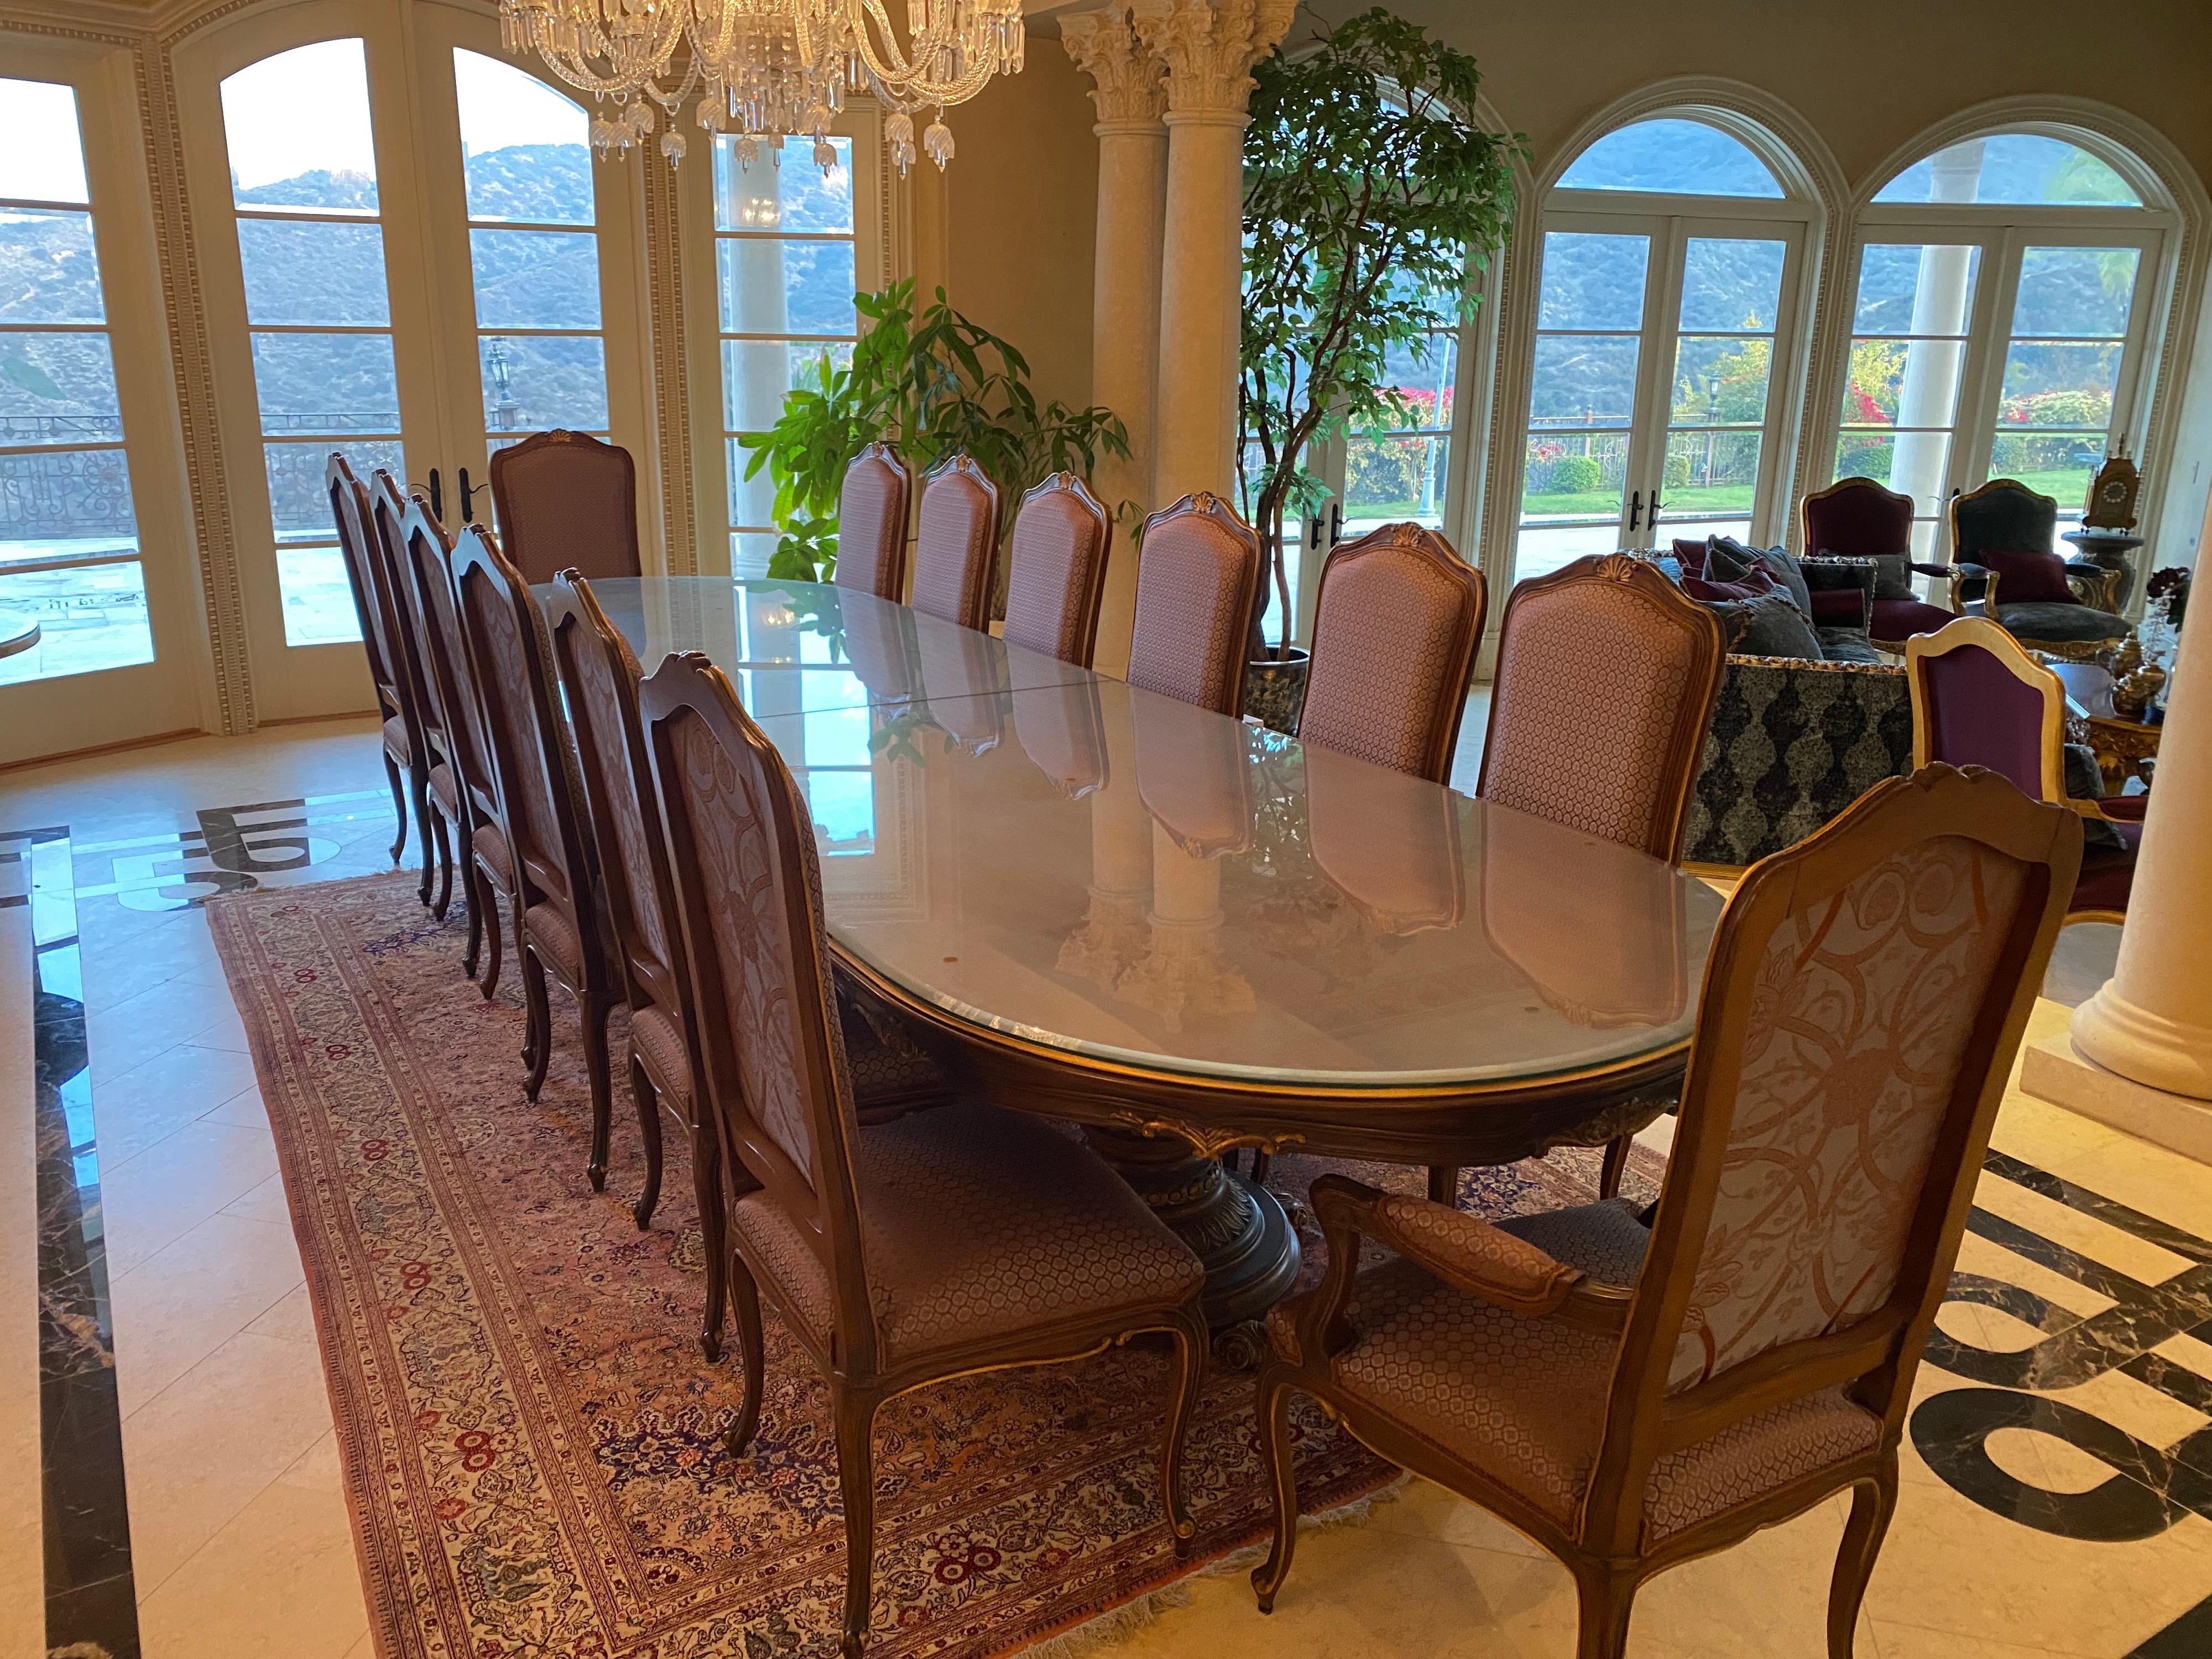 Table de salle à manger en acajou italien faite sur mesure et quatorze chaises 

La table n'a jamais été utilisée, les chaises et la table sont en excellent état.

Si vous avez des questions ou des préoccupations, n'hésitez pas à les poser. 

